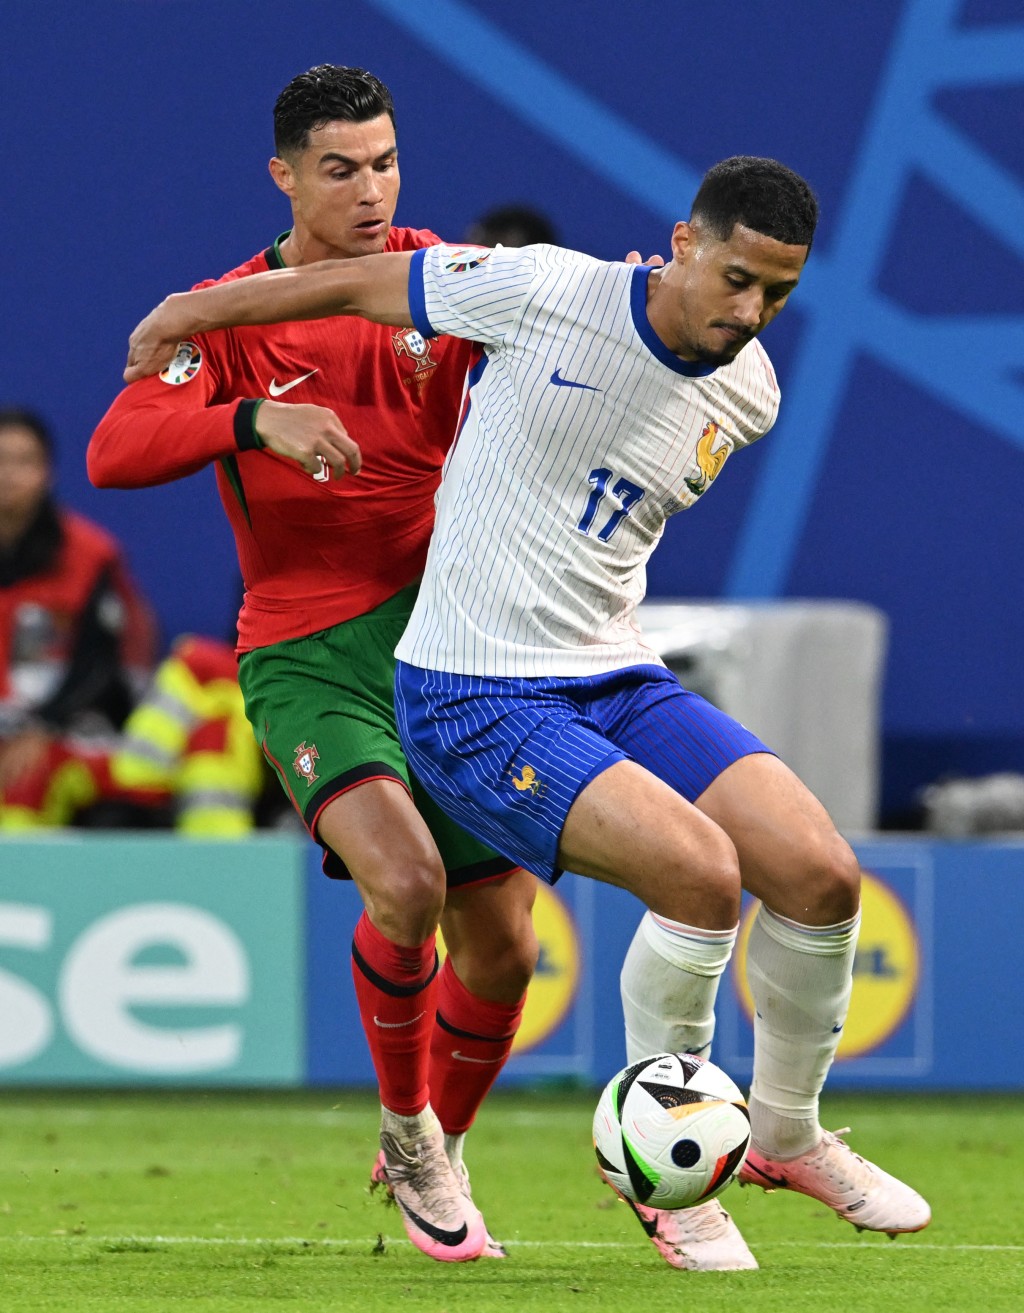 法國(白衫)互射12碼5:3擊敗葡萄牙(紅衫)。REUTERS